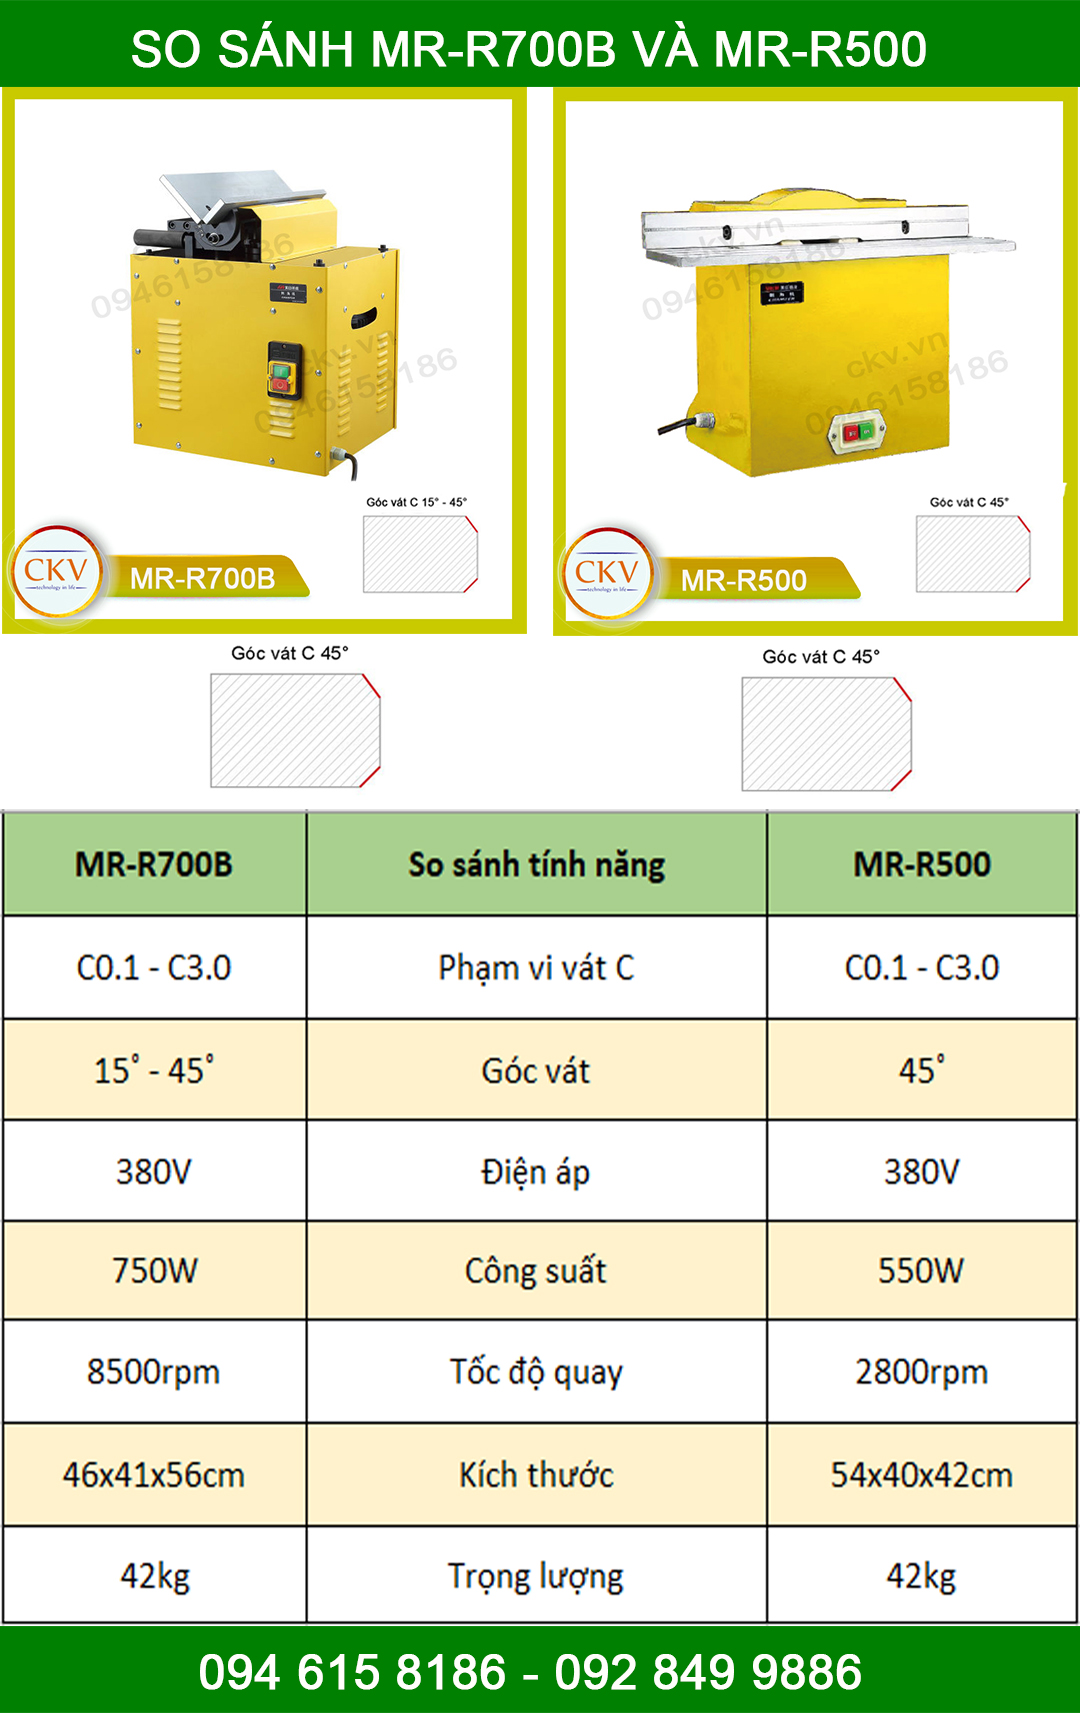 So sánh MR-R700B và MR-R500